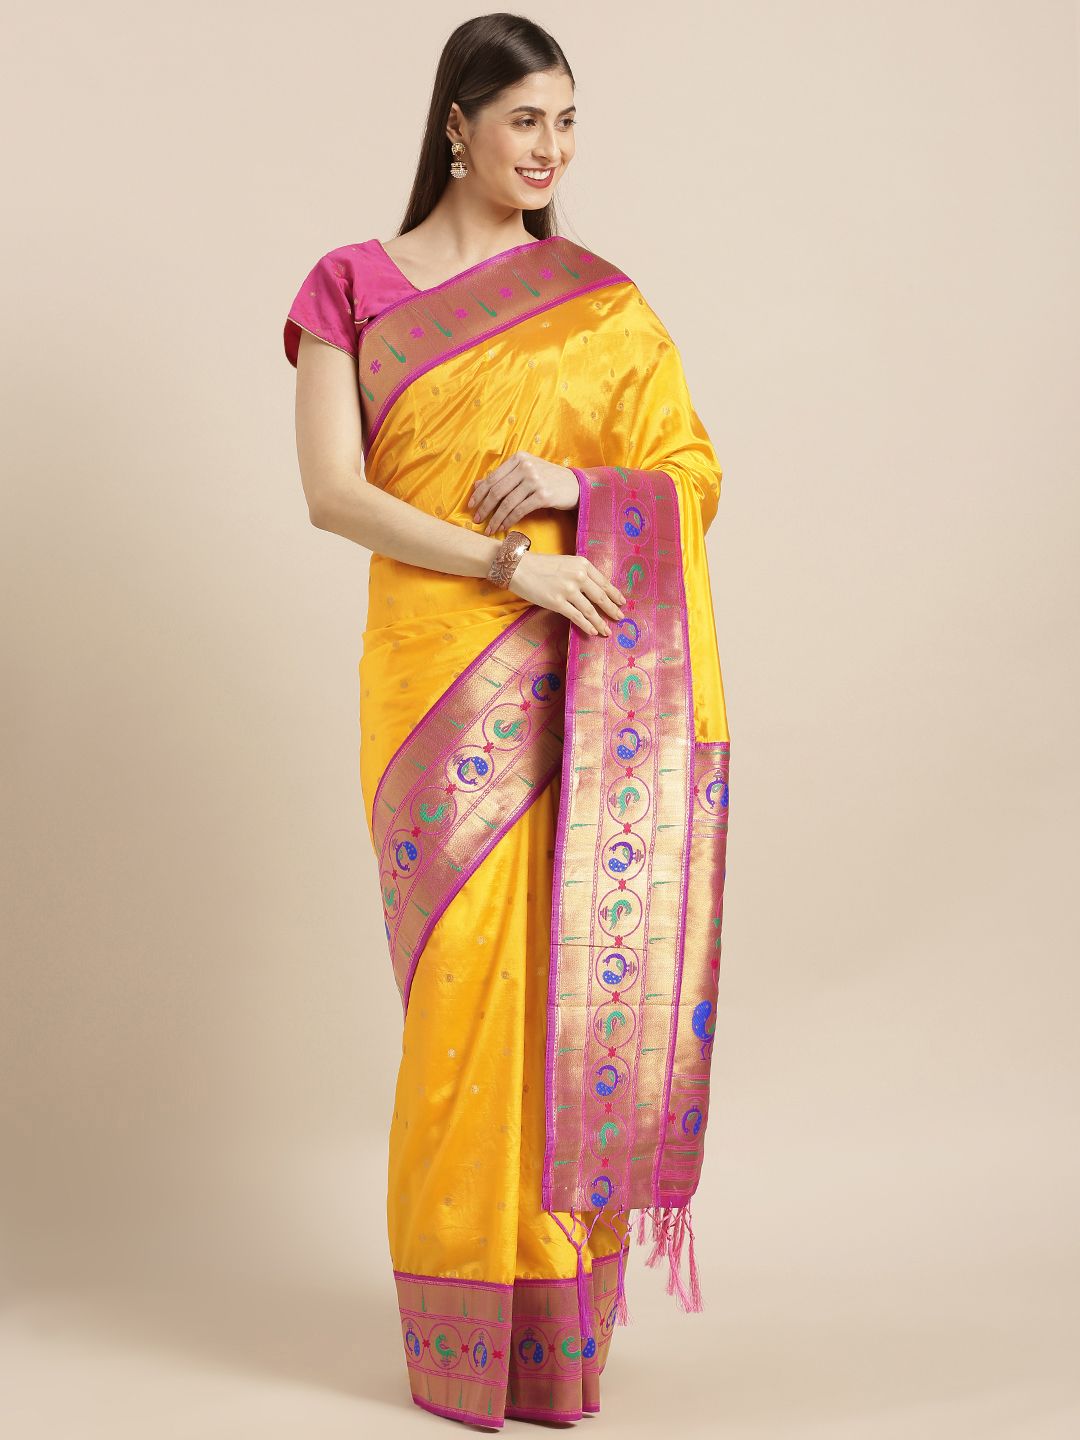 Varkala Silk Sarees Gold-Toned & Pink Silk Blend Woven Design Paithani Saree Price in India